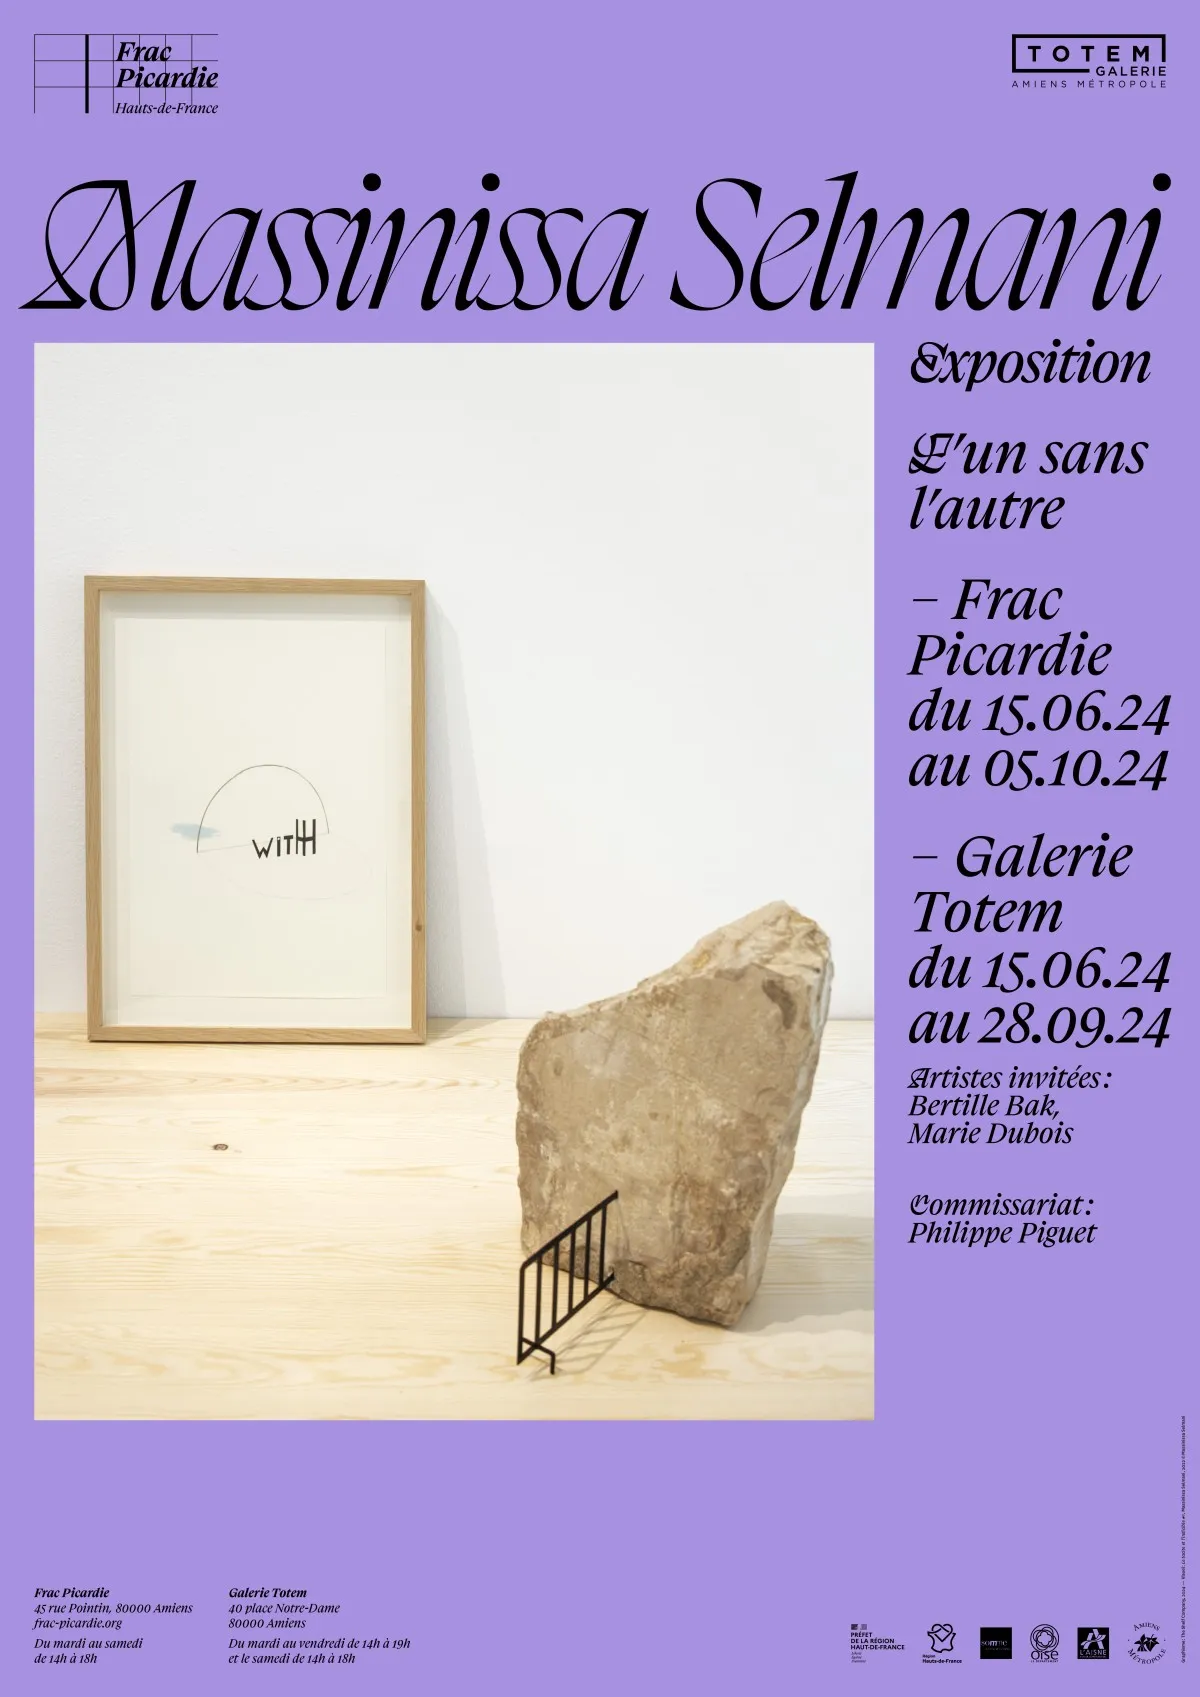 Affiche de l'exposition de Massinissa Selmani au Frac Picardie